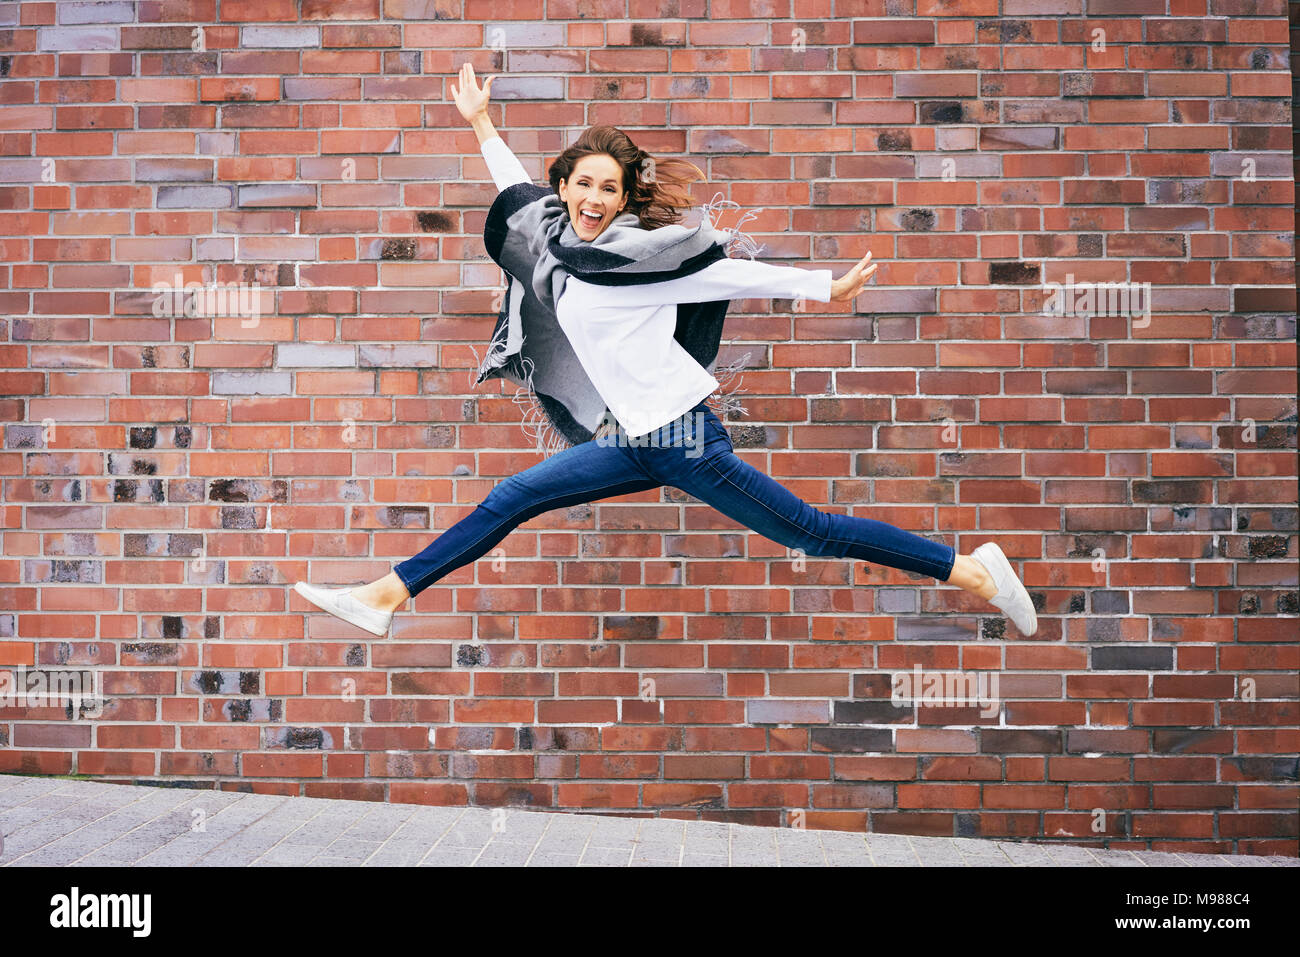 Glückliche junge Frau springt in die Luft vor Backsteinmauer Stockfoto